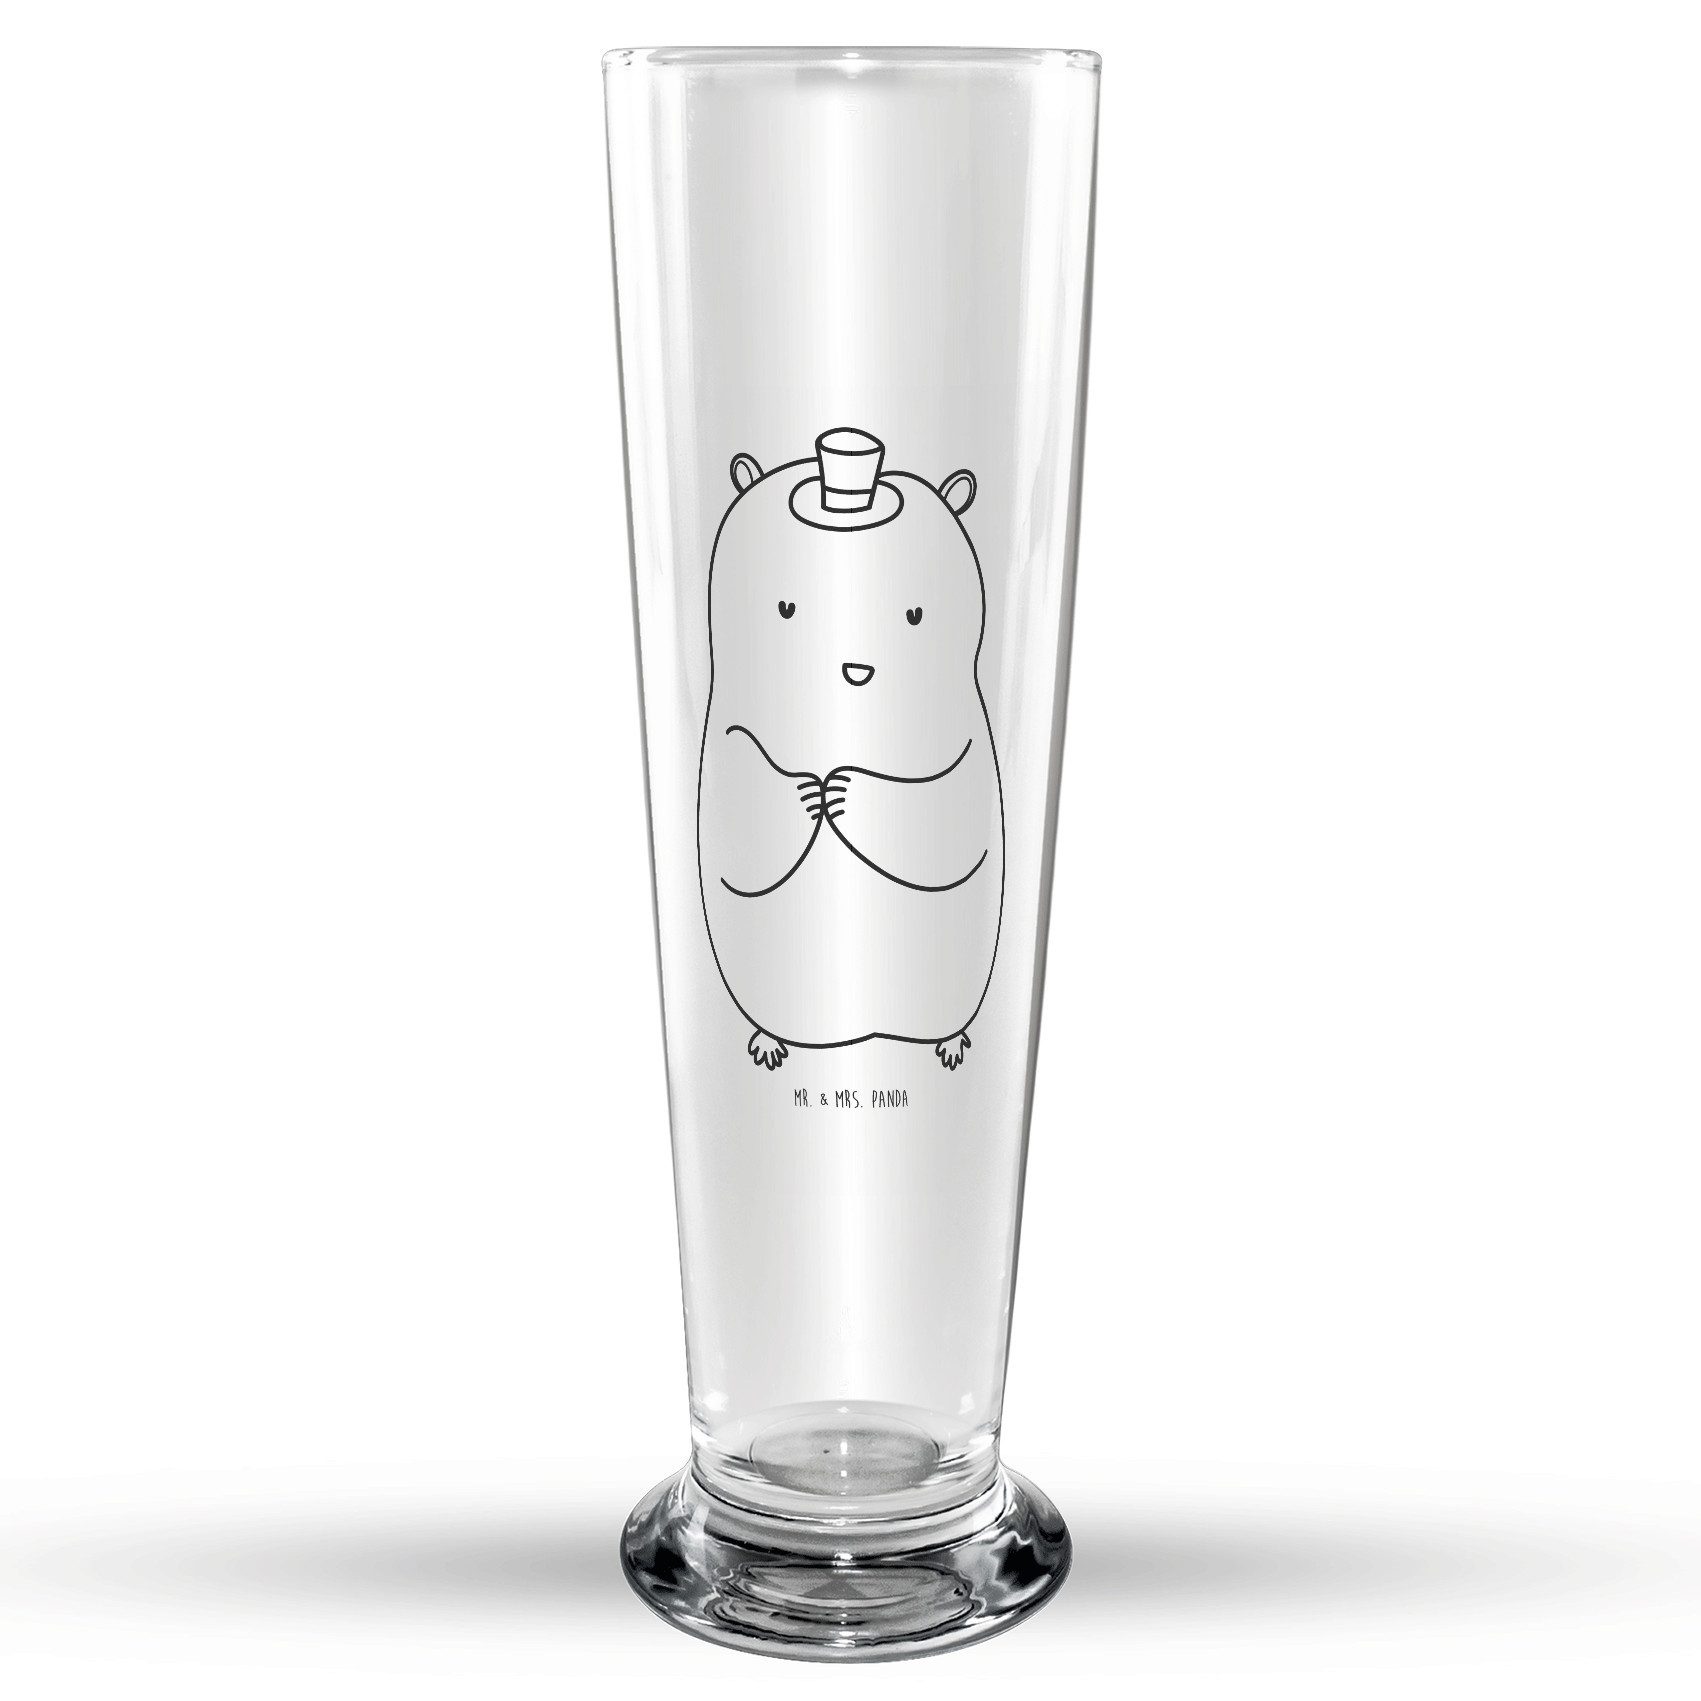 Mr. & Mrs. Panda Bierglas Hamster Hut - Transparent - Geschenk, Bier Krug, Bierkrug, Gute Laune, Premium Glas, Hochwertige Gravur